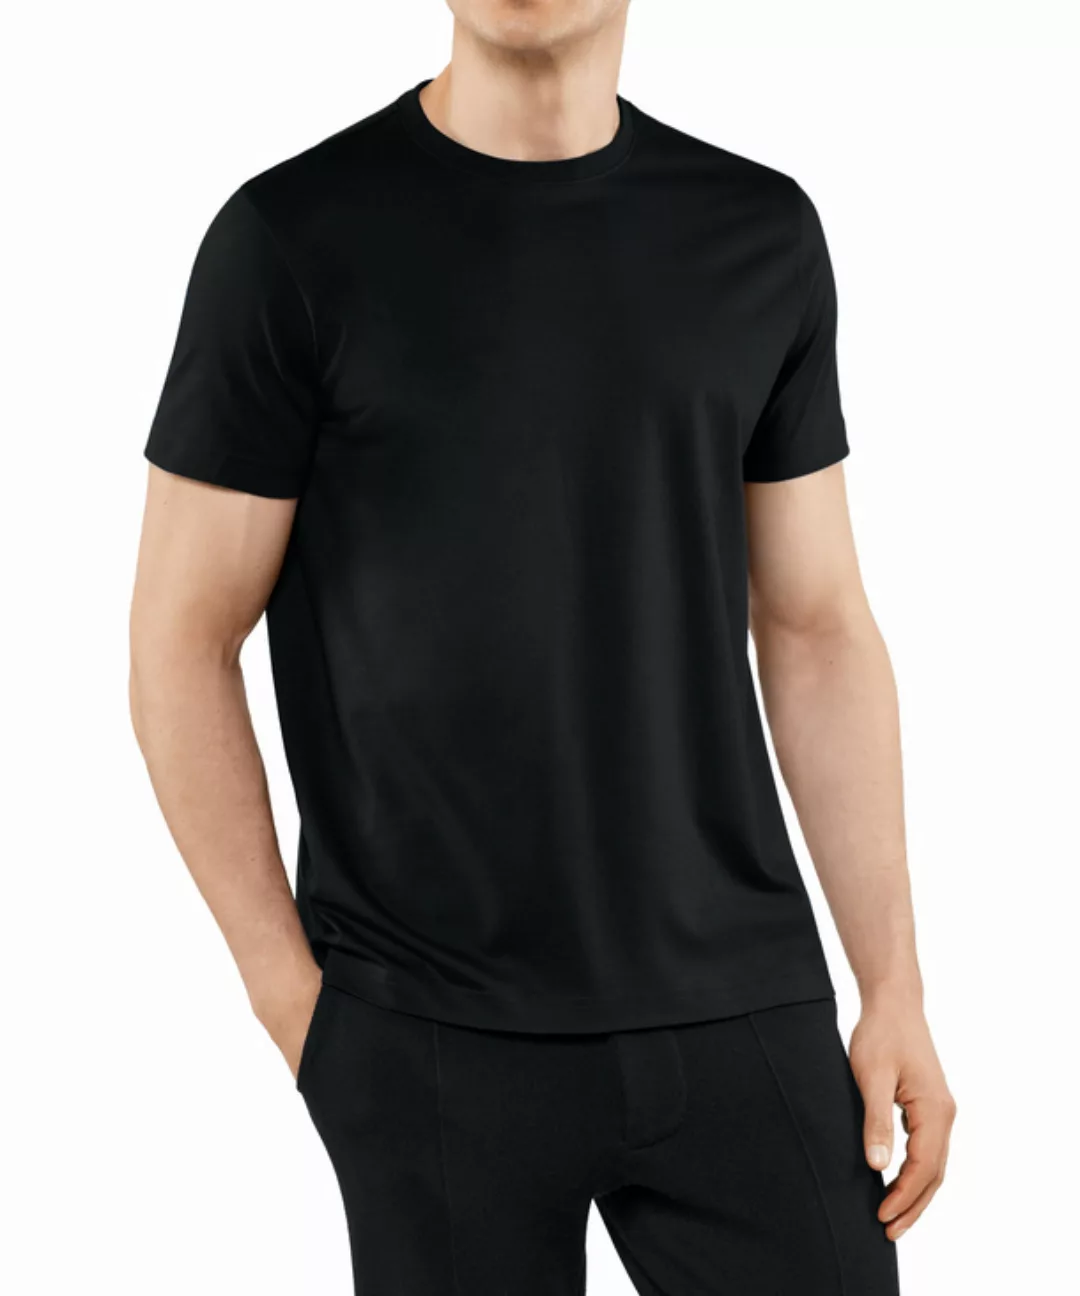 FALKE Herren T-Shirt Rundhals, Polo, S, Schwarz, Uni,Struktur, Baumwolle, 6 günstig online kaufen